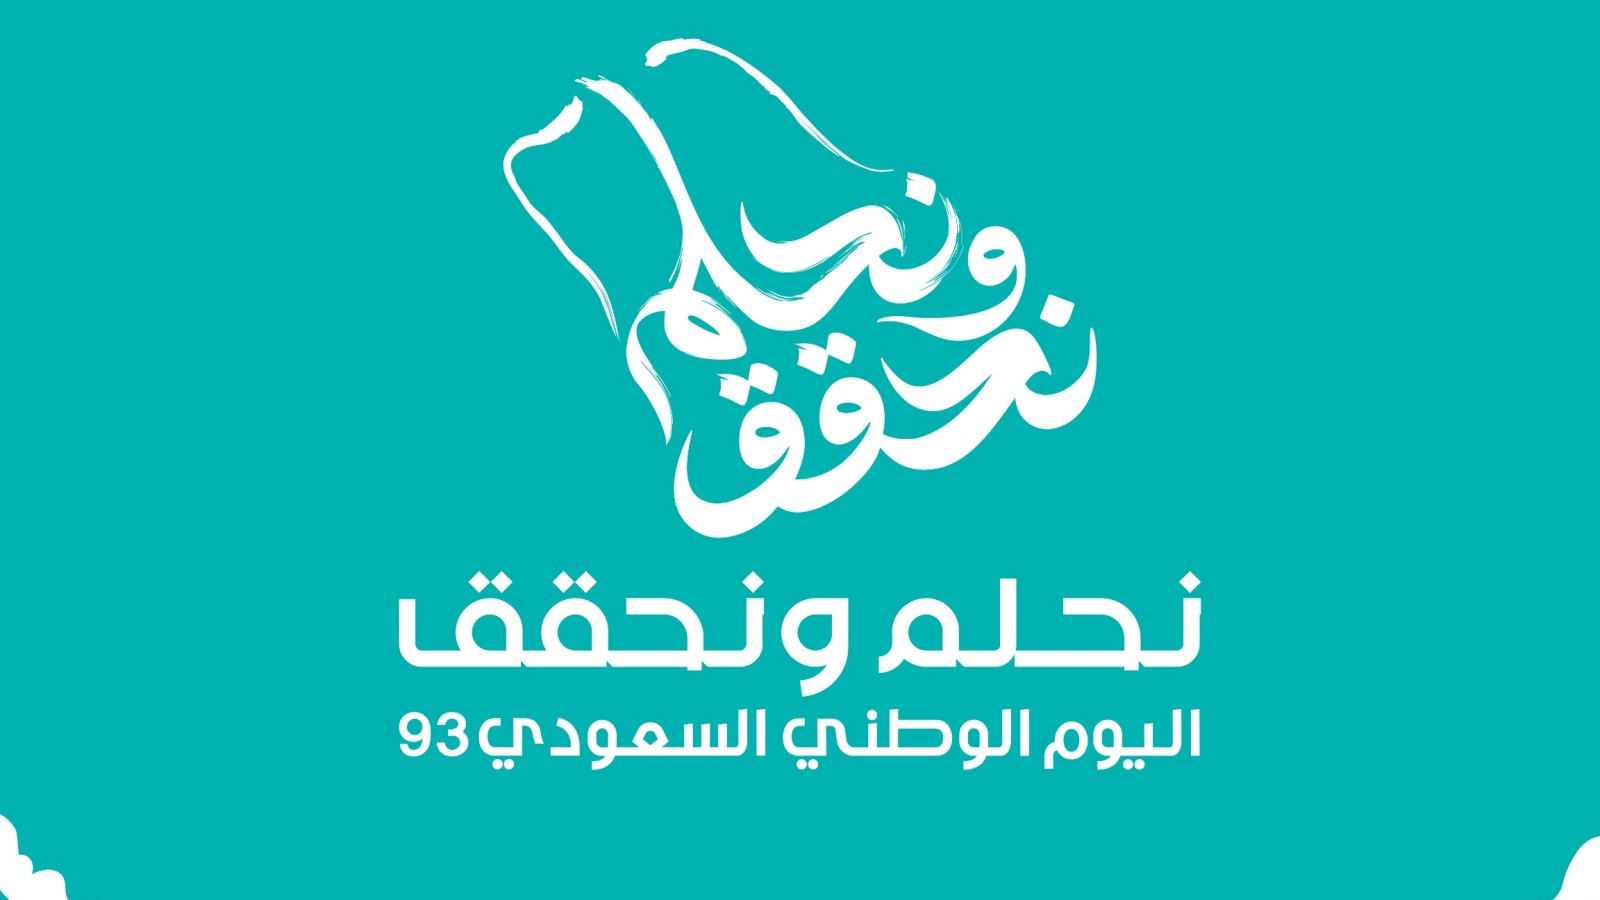 شعار اليوم الوطني السعودي 93... المملكة تحلم وتحقق